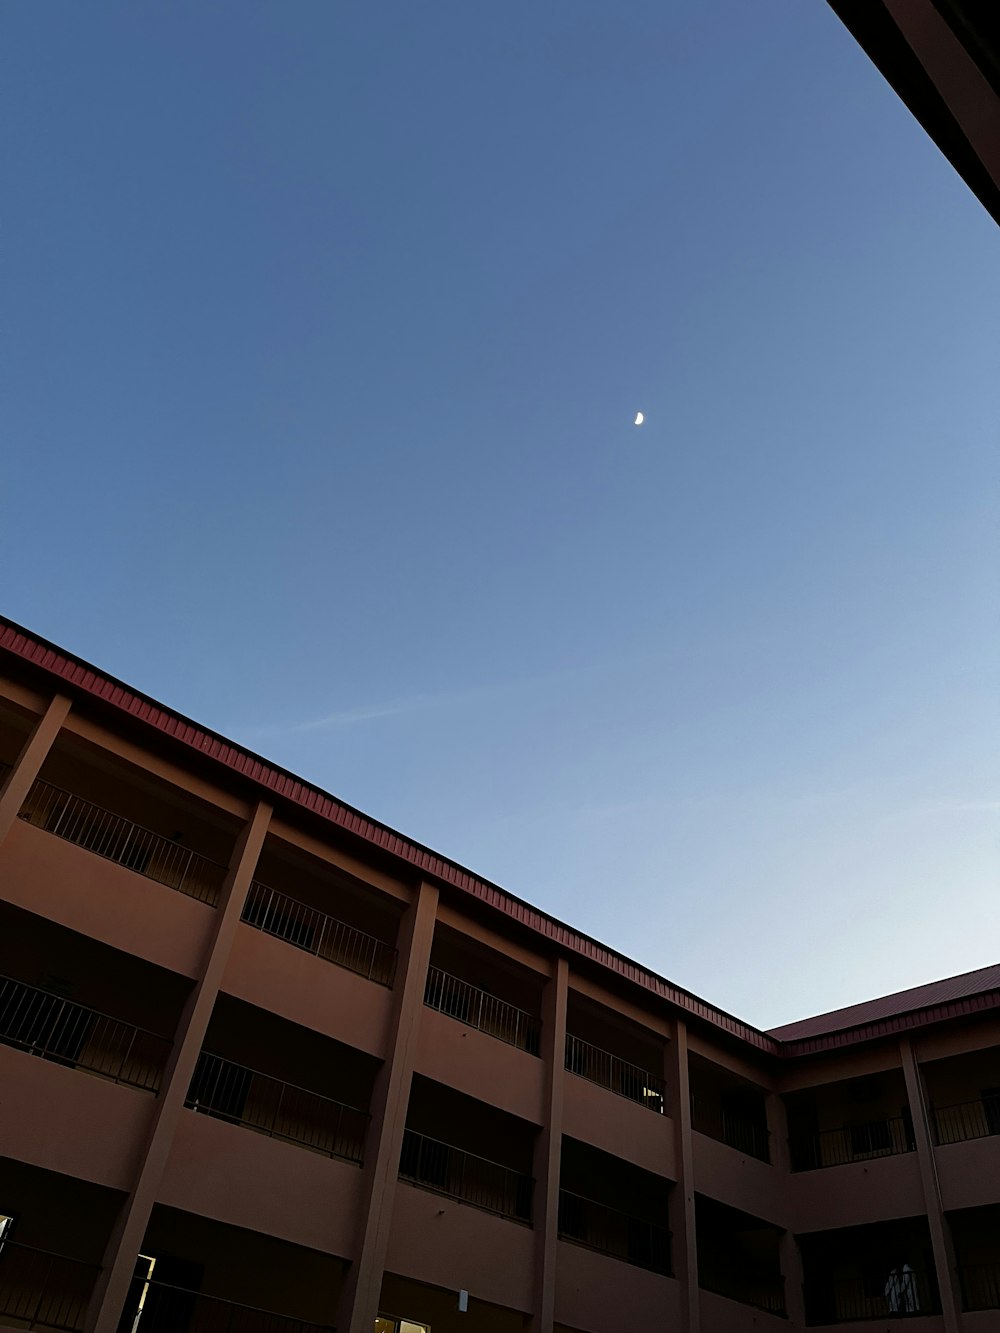 Un edificio con una luna en el cielo